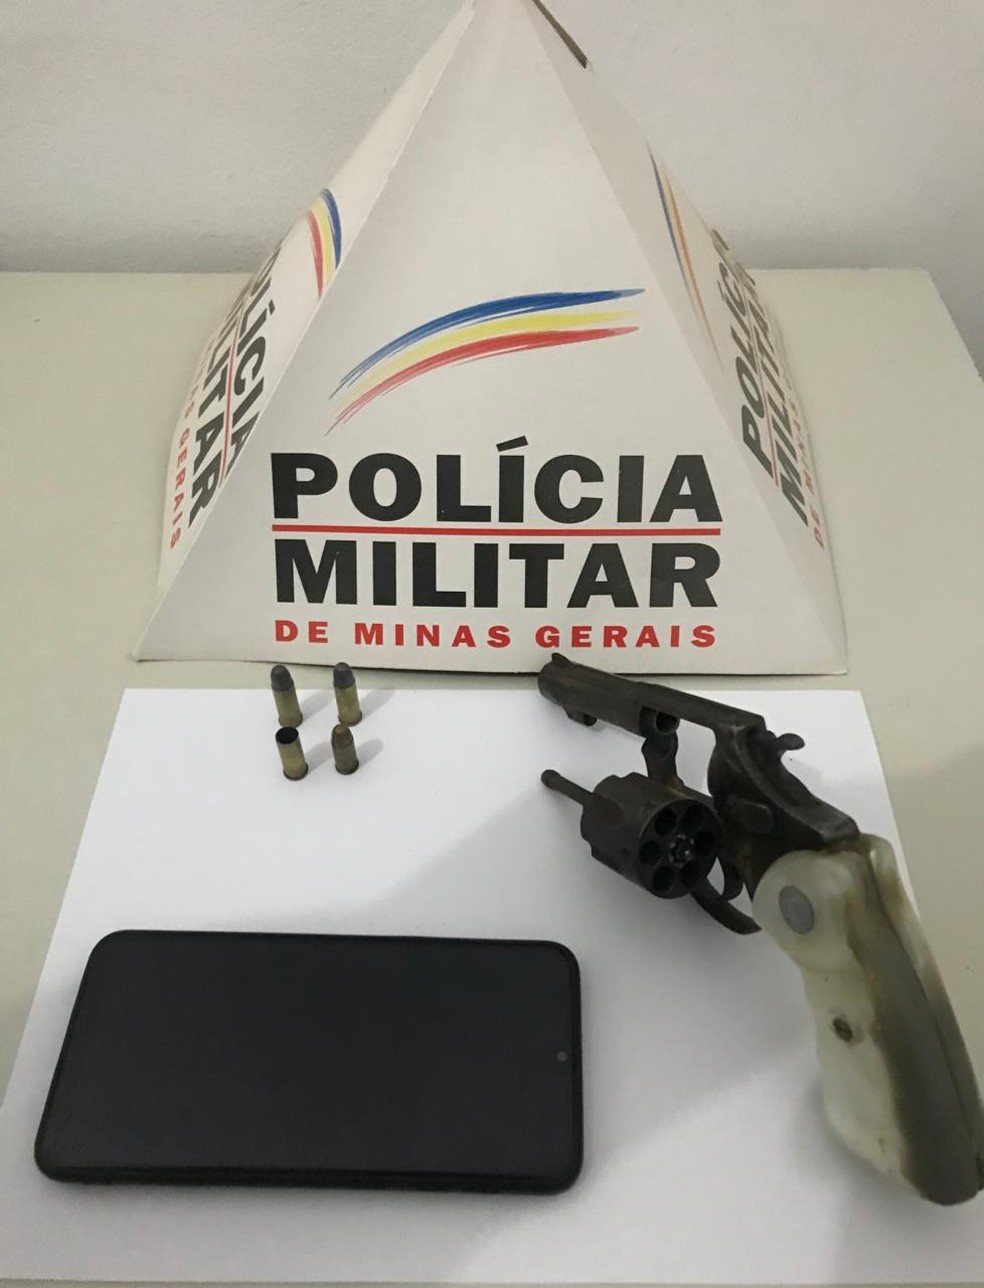 Arma, munições e celular foram apreendidos com suspeito em Verdelândia — Foto: Polícia Militar